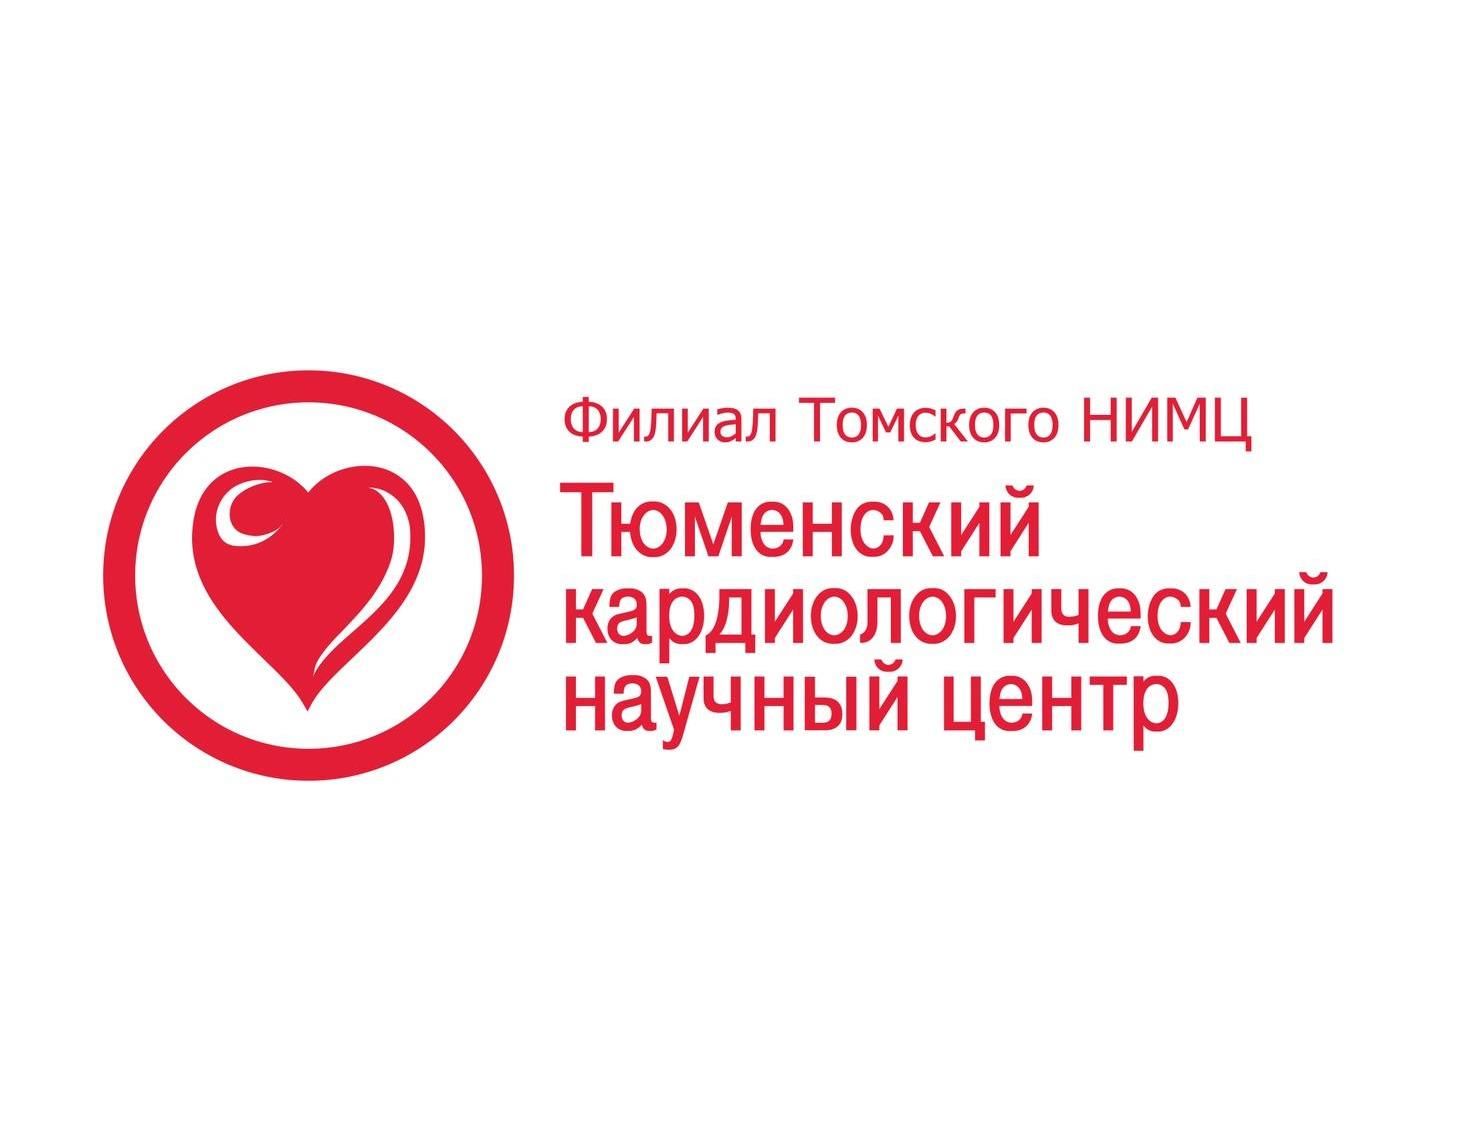 Всемирный конгресс кардиологов 2006: Объединенный конгресс Европейского Общества кардиологов и Всемирной Федерации сердца